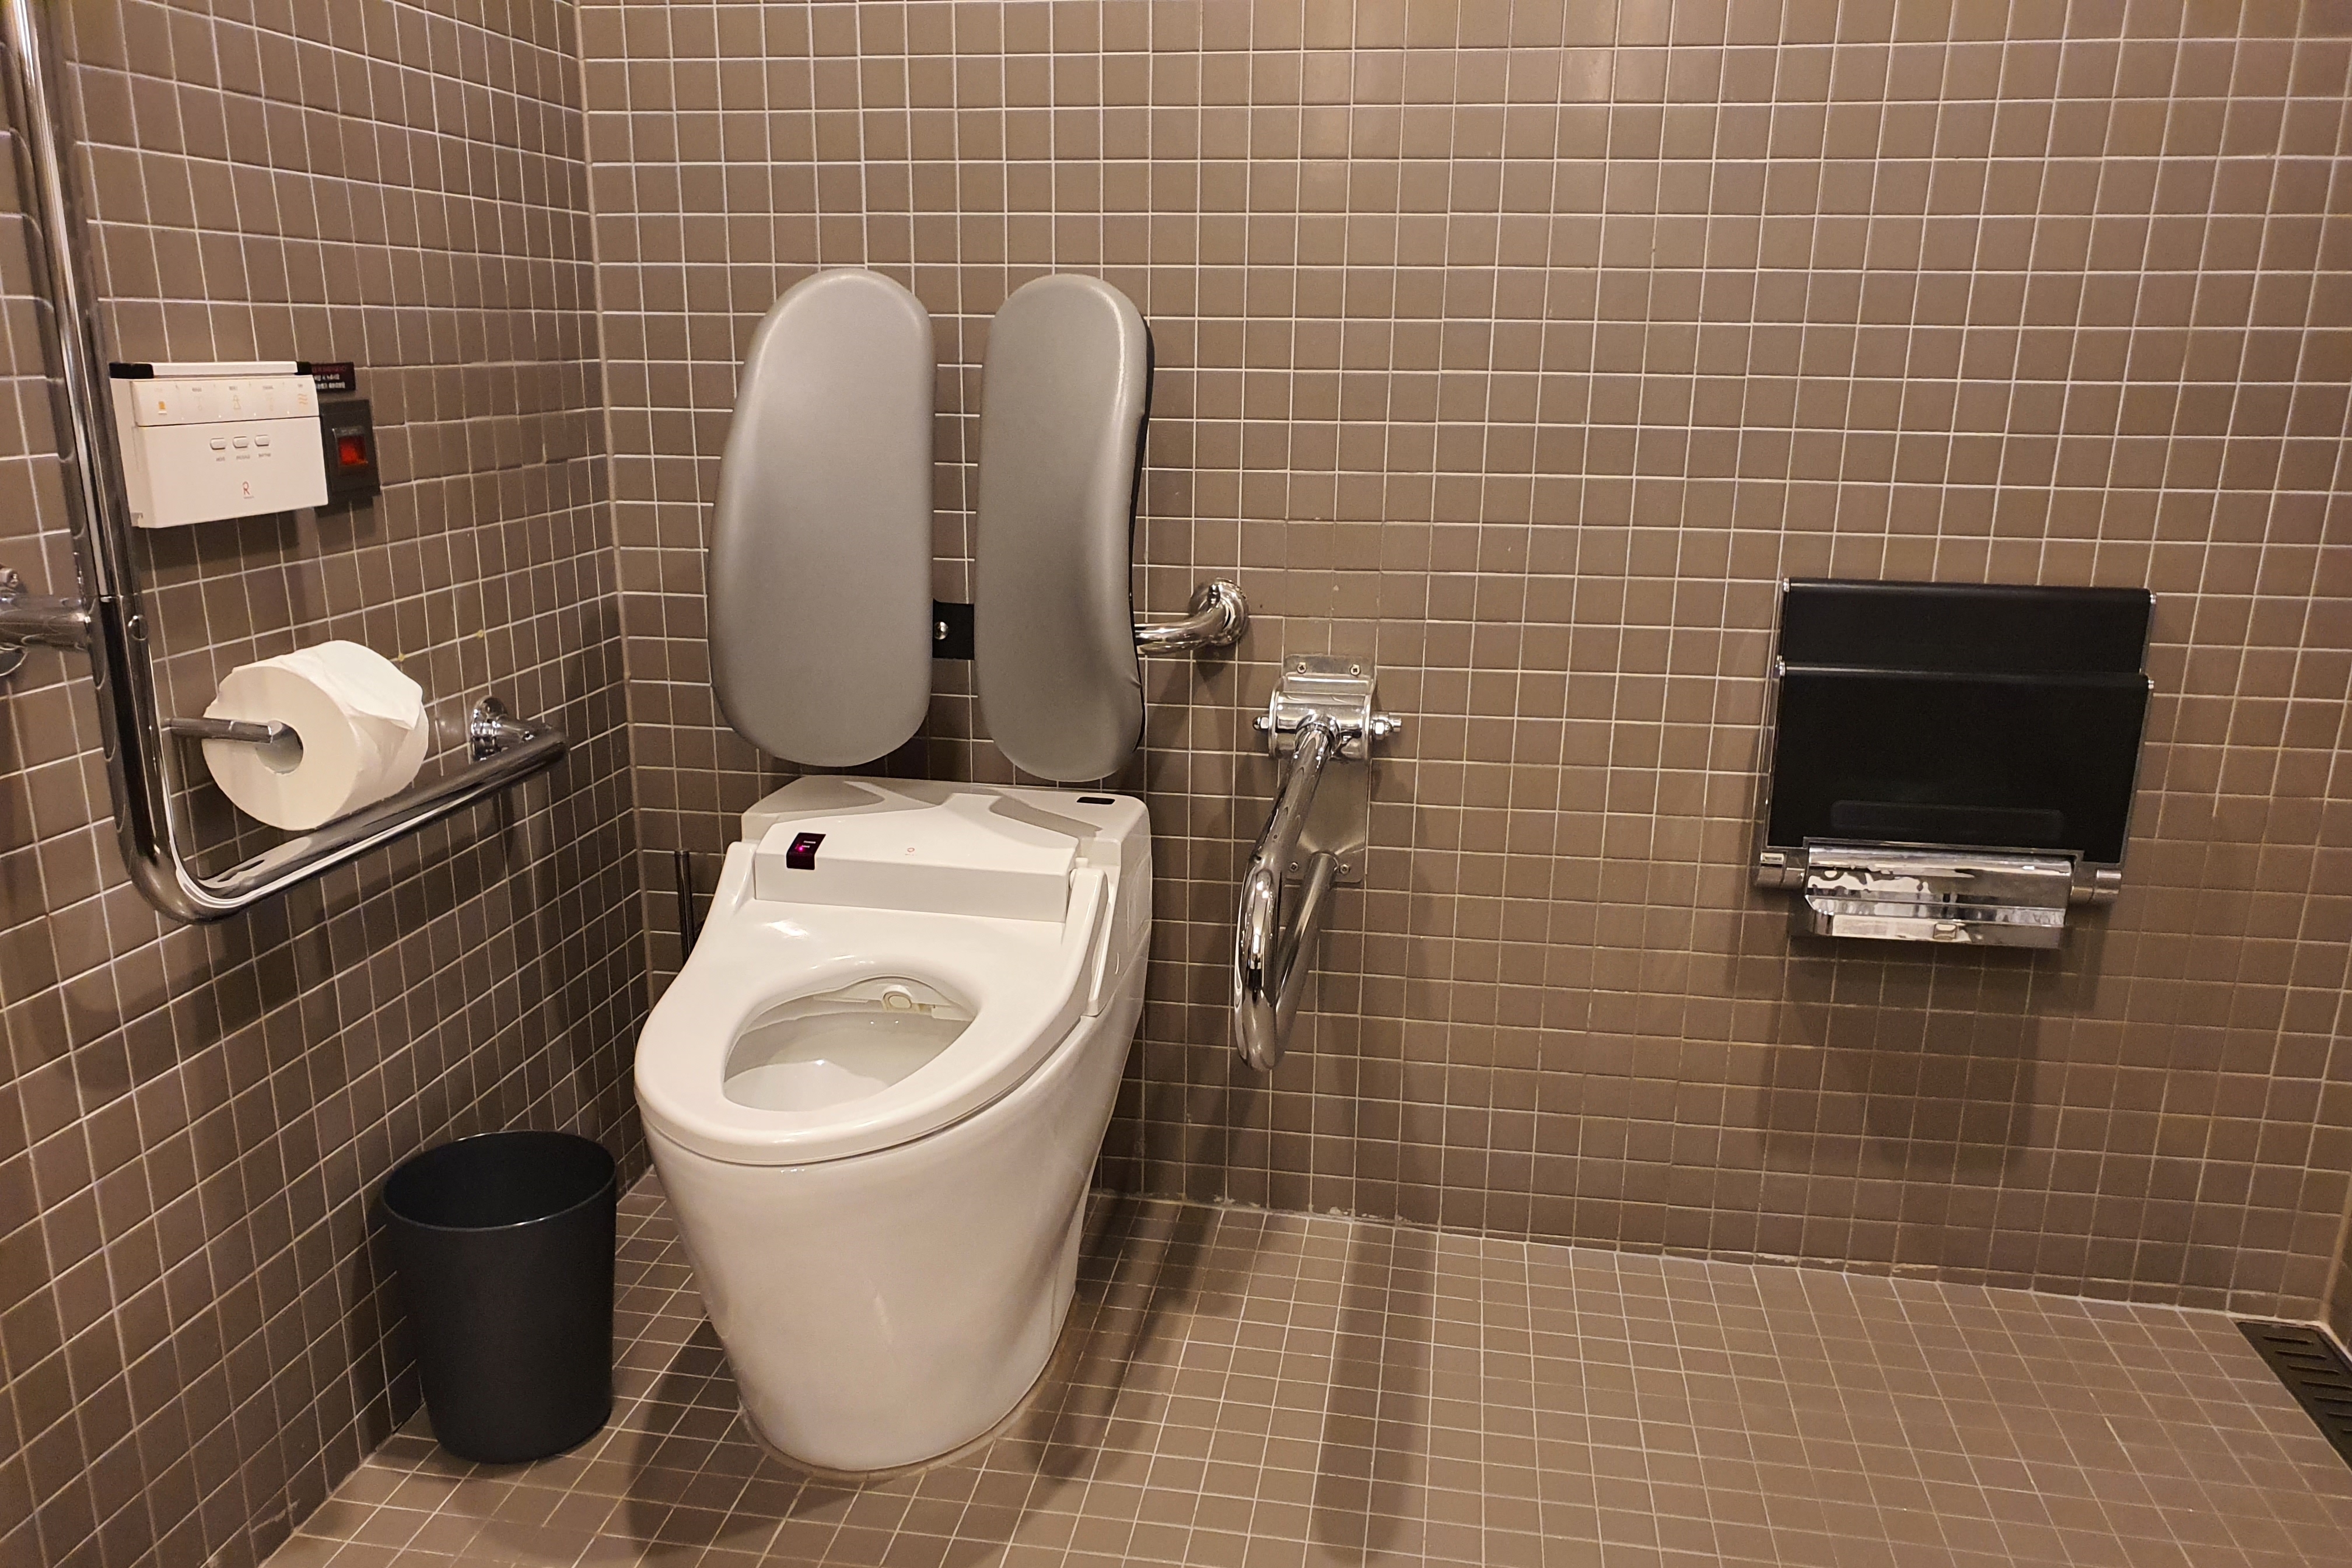 객실 내 화장실0 : 나란히 설치된 양변기와 벽걸이형 샤워 의자